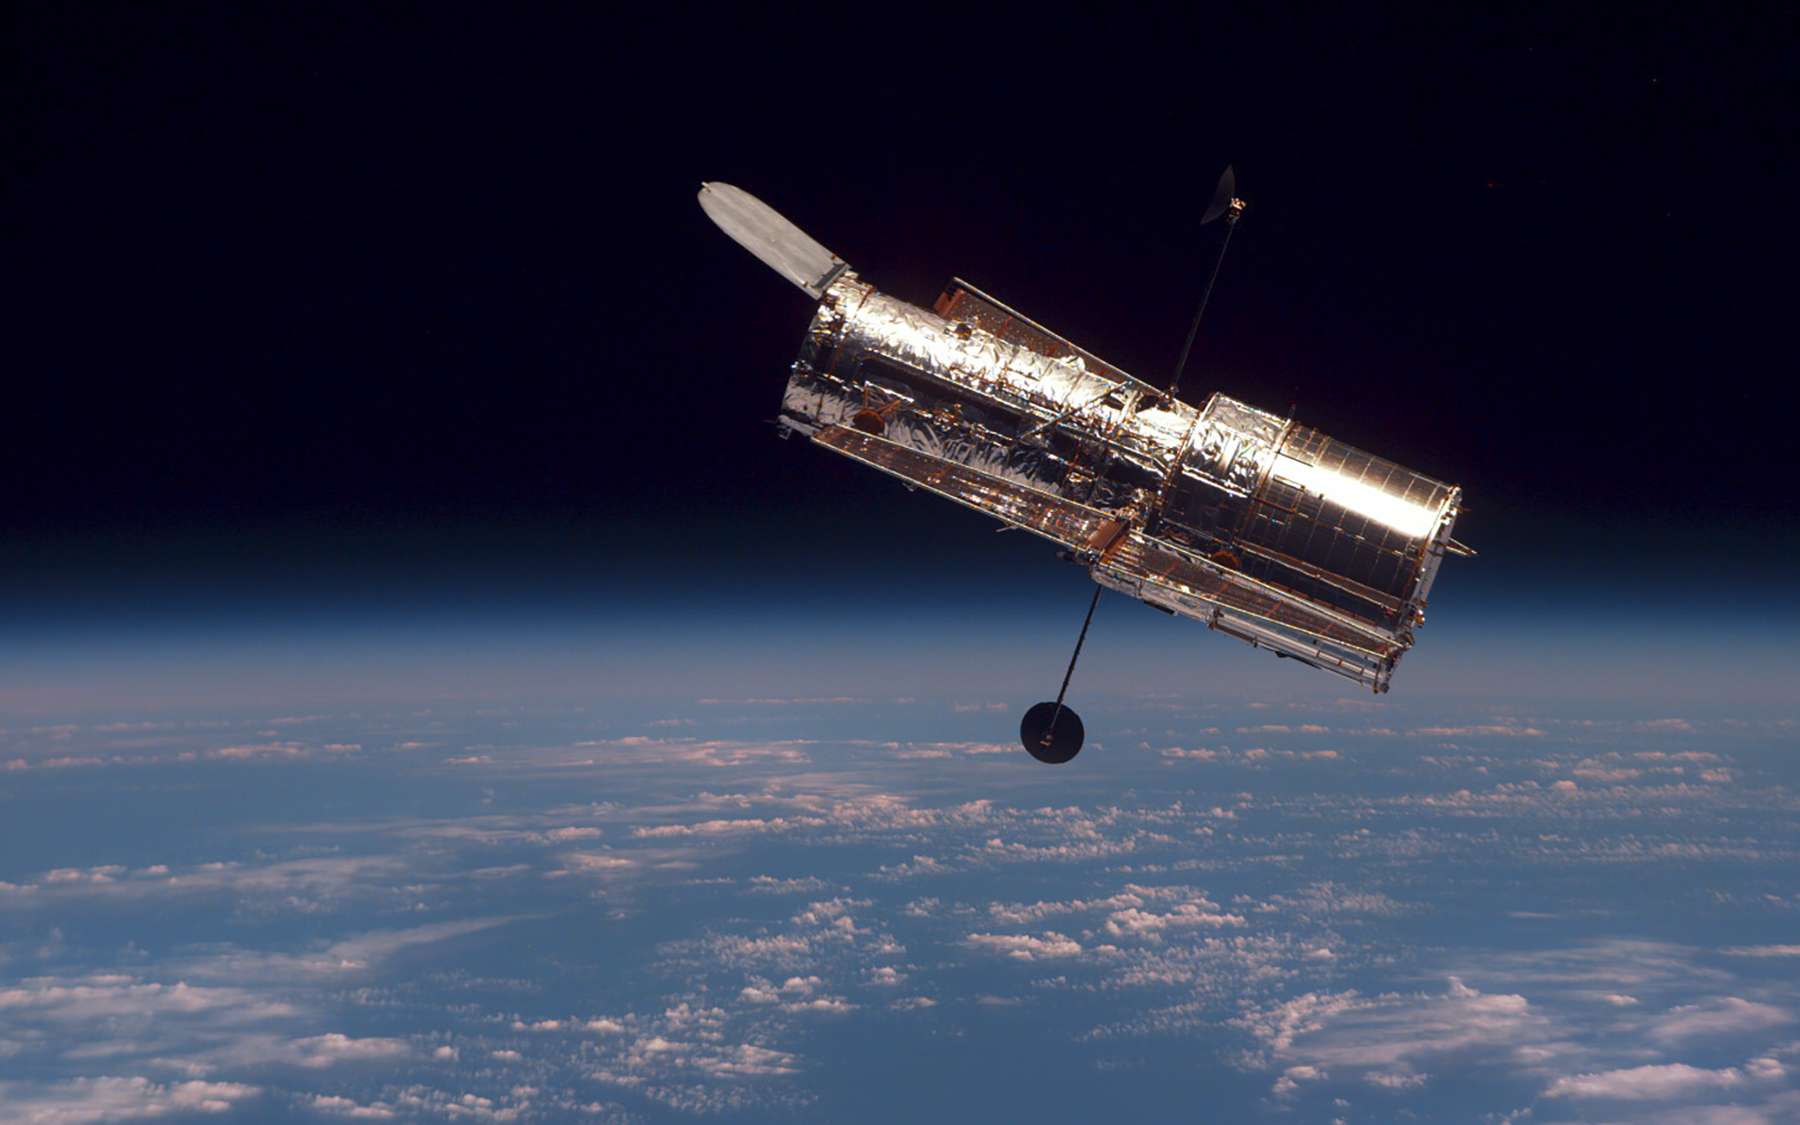 SpaceX propose à la Nasa de prolonger la vie d'Hubble